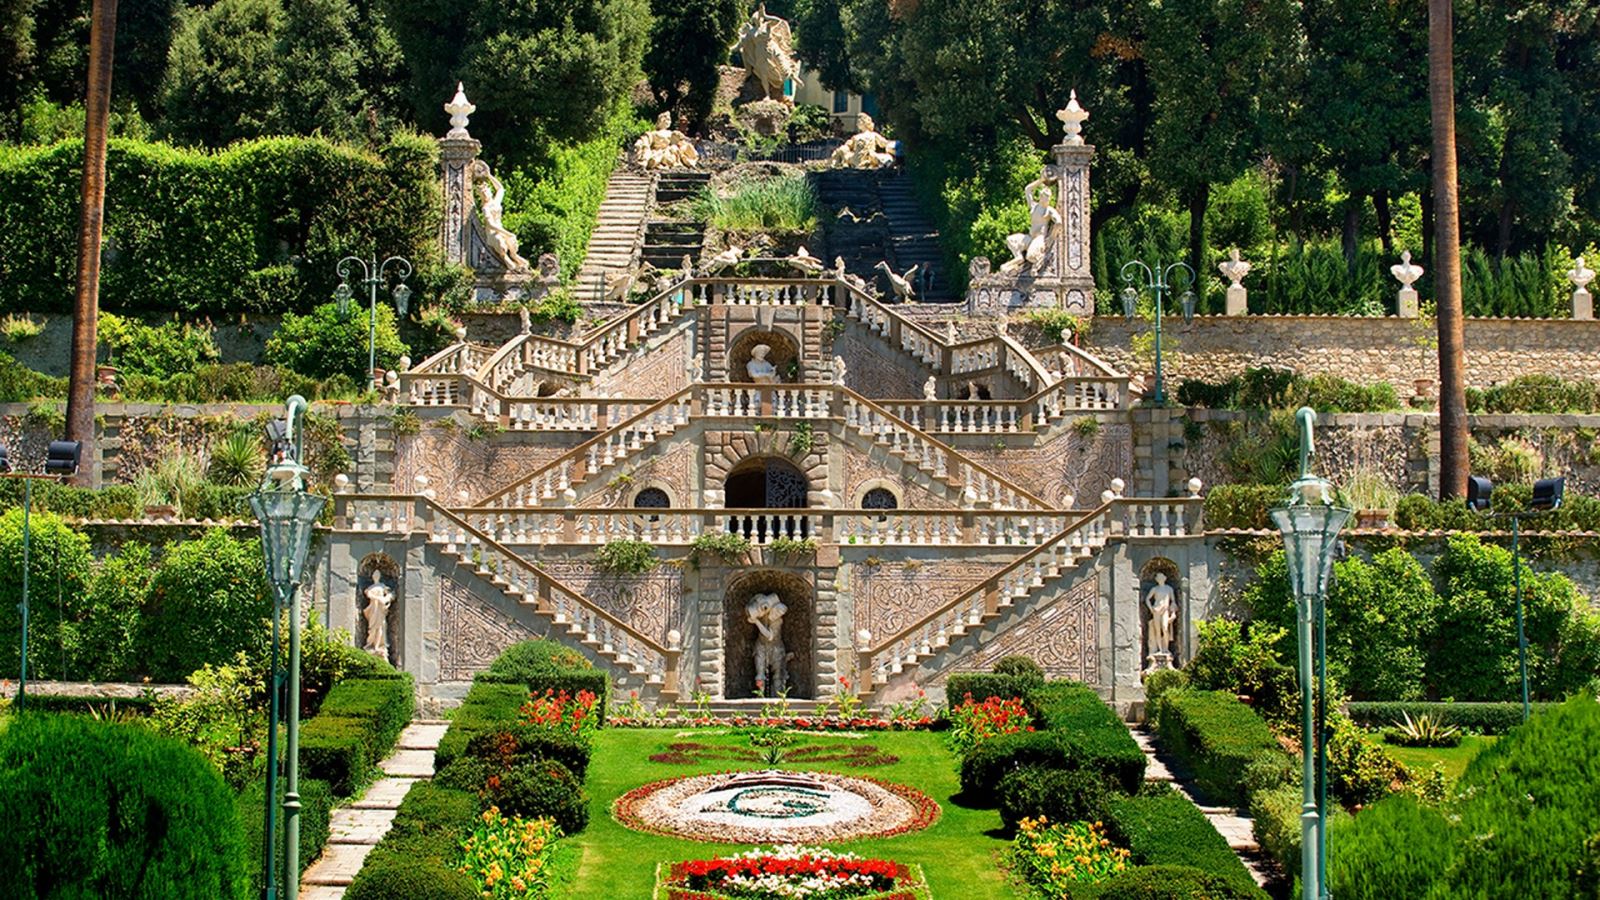  Jardin de la Villa Garzoni, Collodi